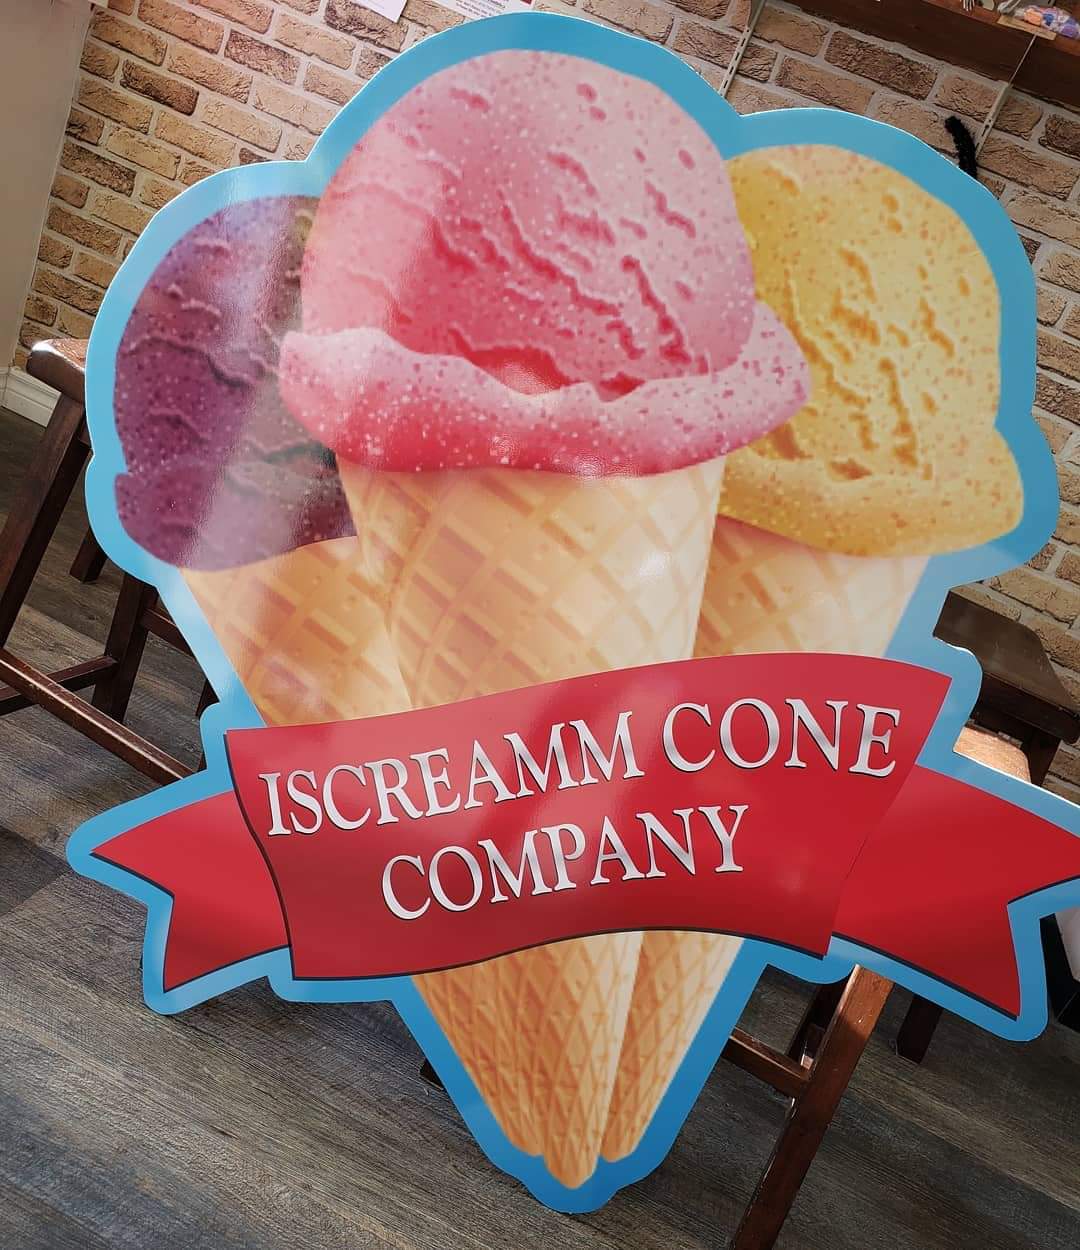 Iscreamm Cone Company